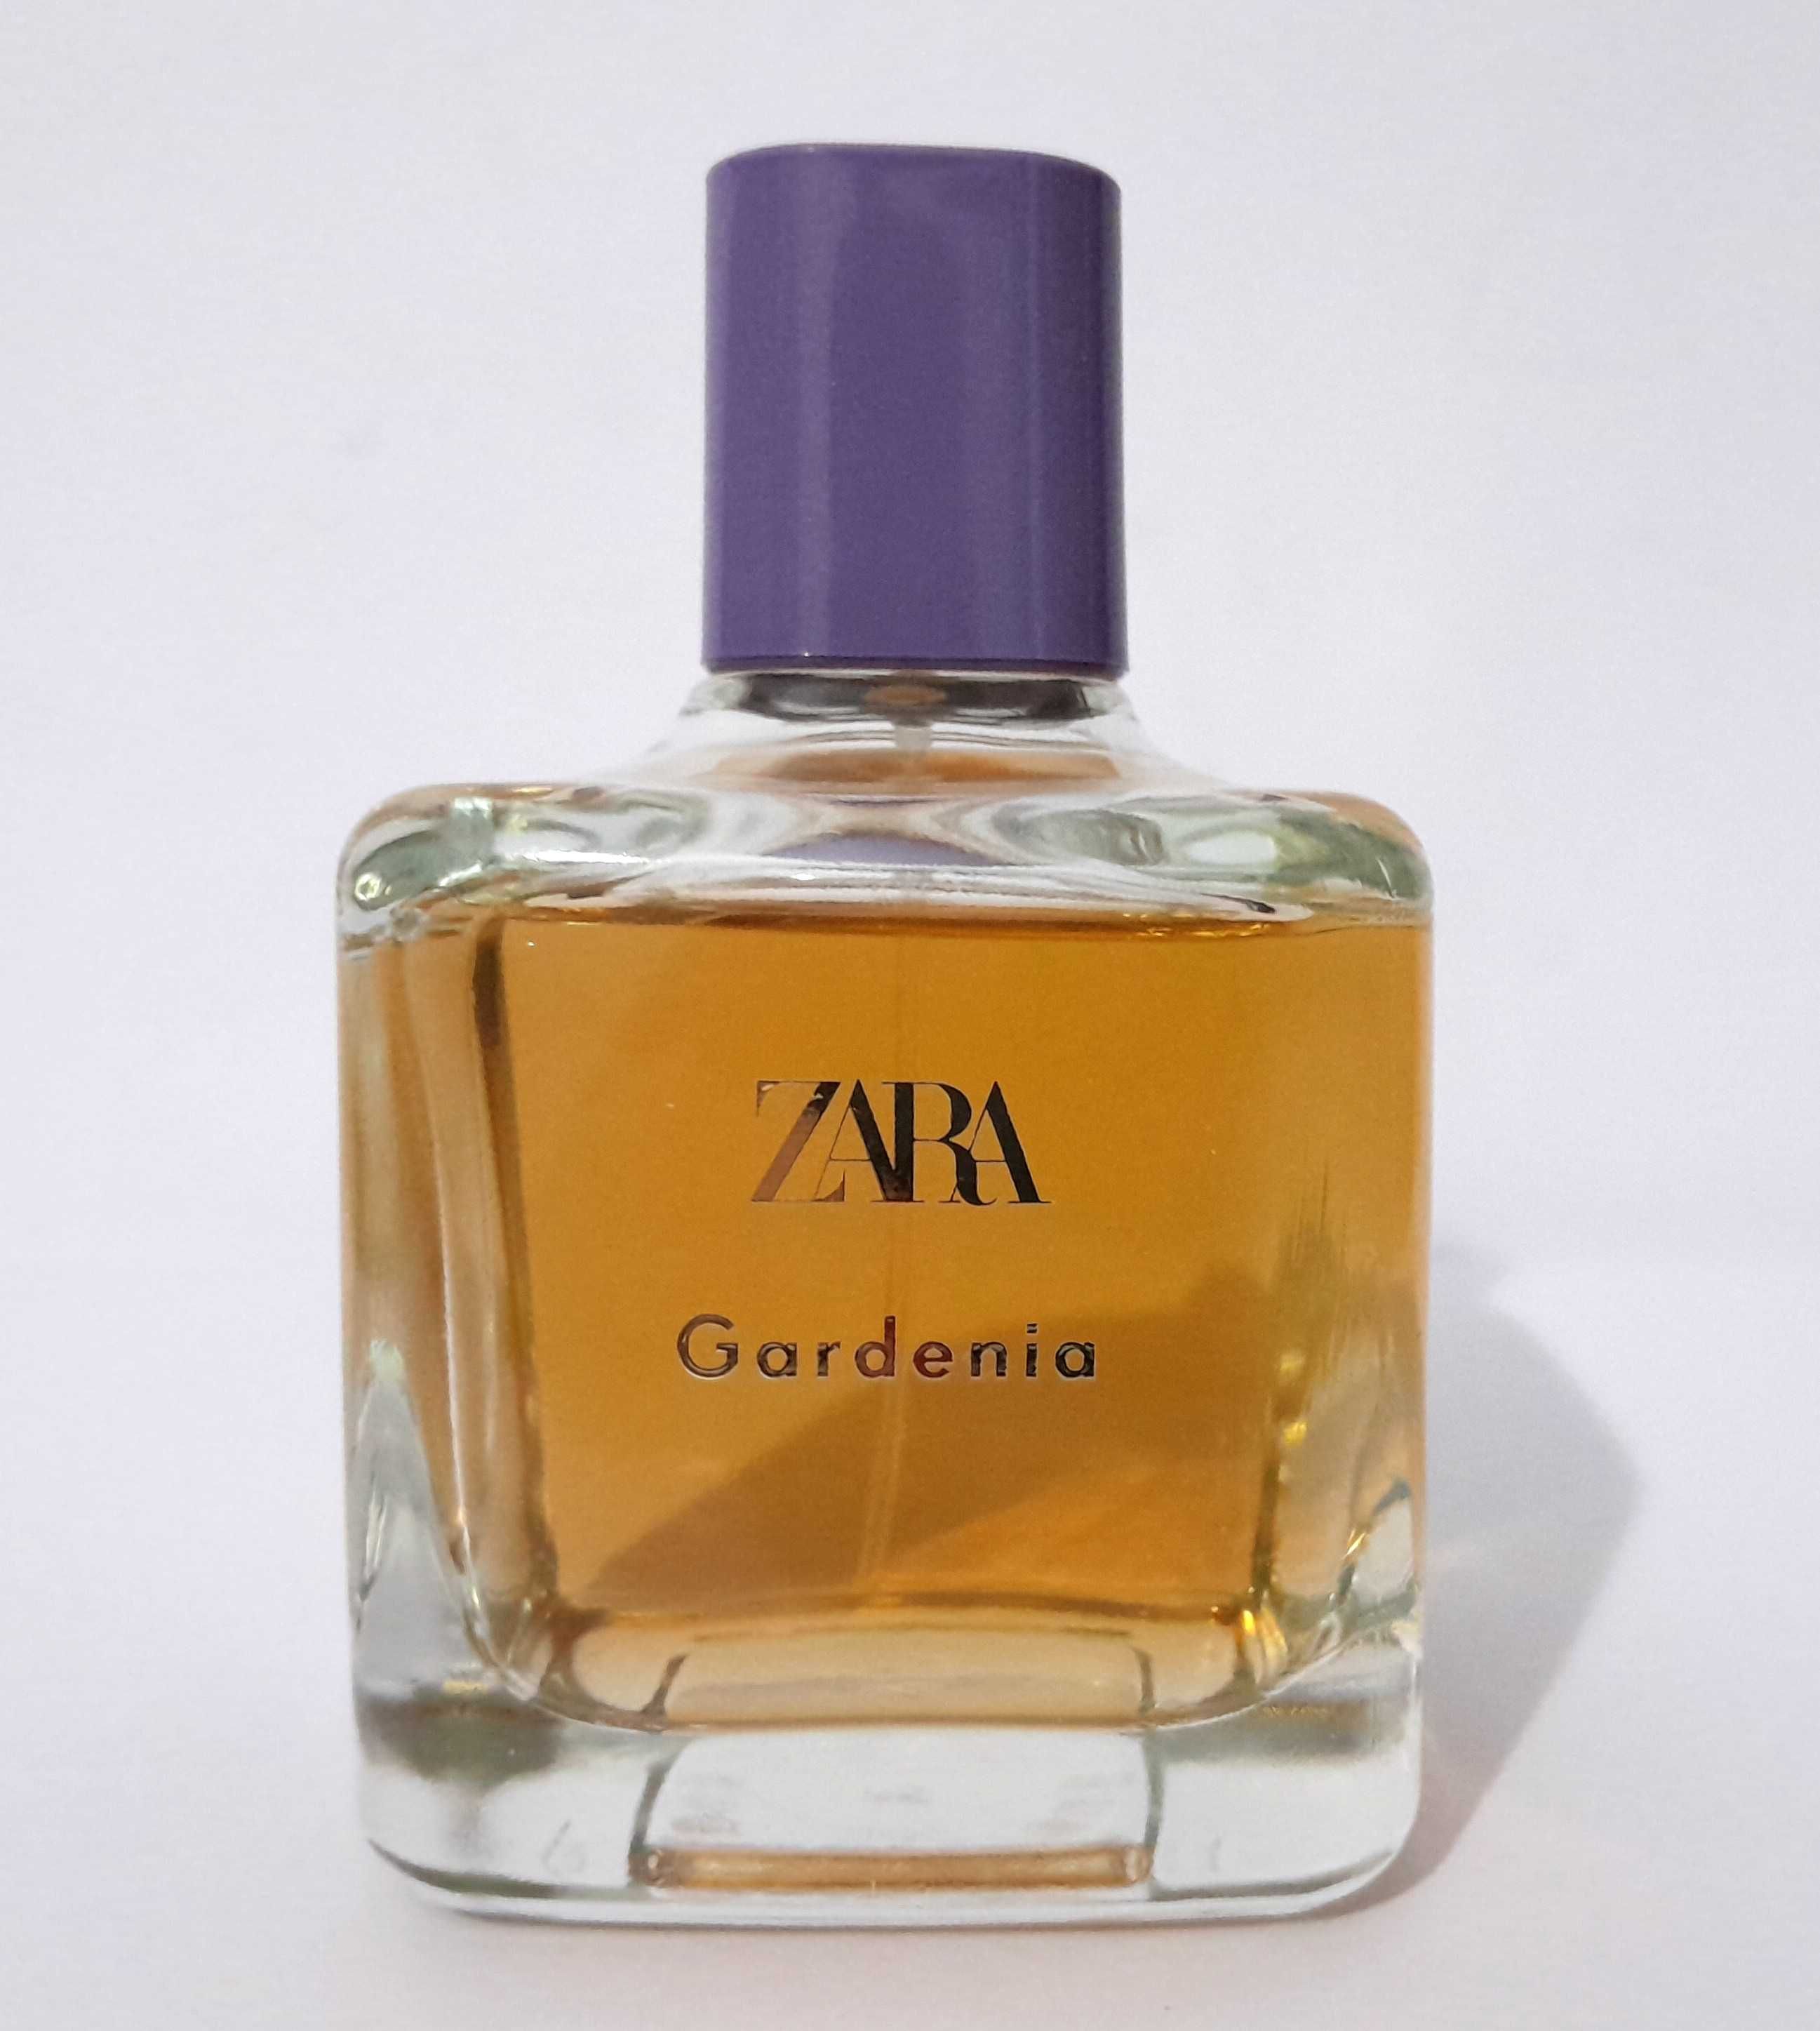 Perfume Zara Gardenia 100ml para senhora